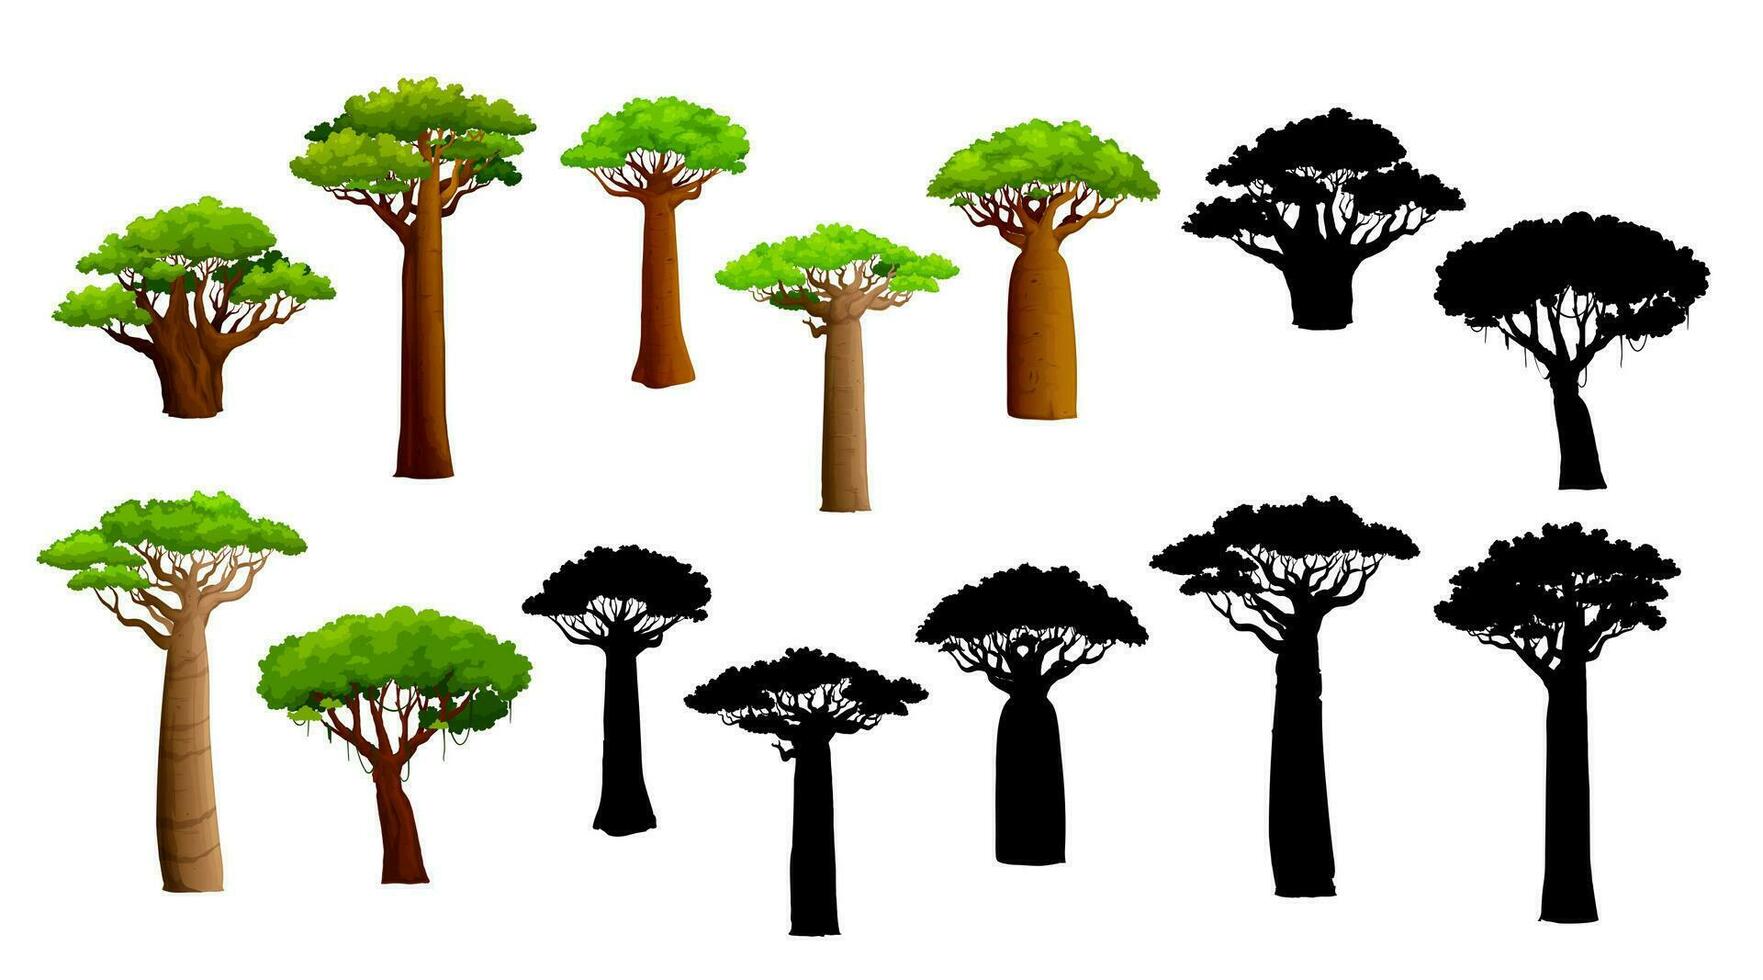 afrikansk baobab träd och silhuetter, isolerat uppsättning vektor